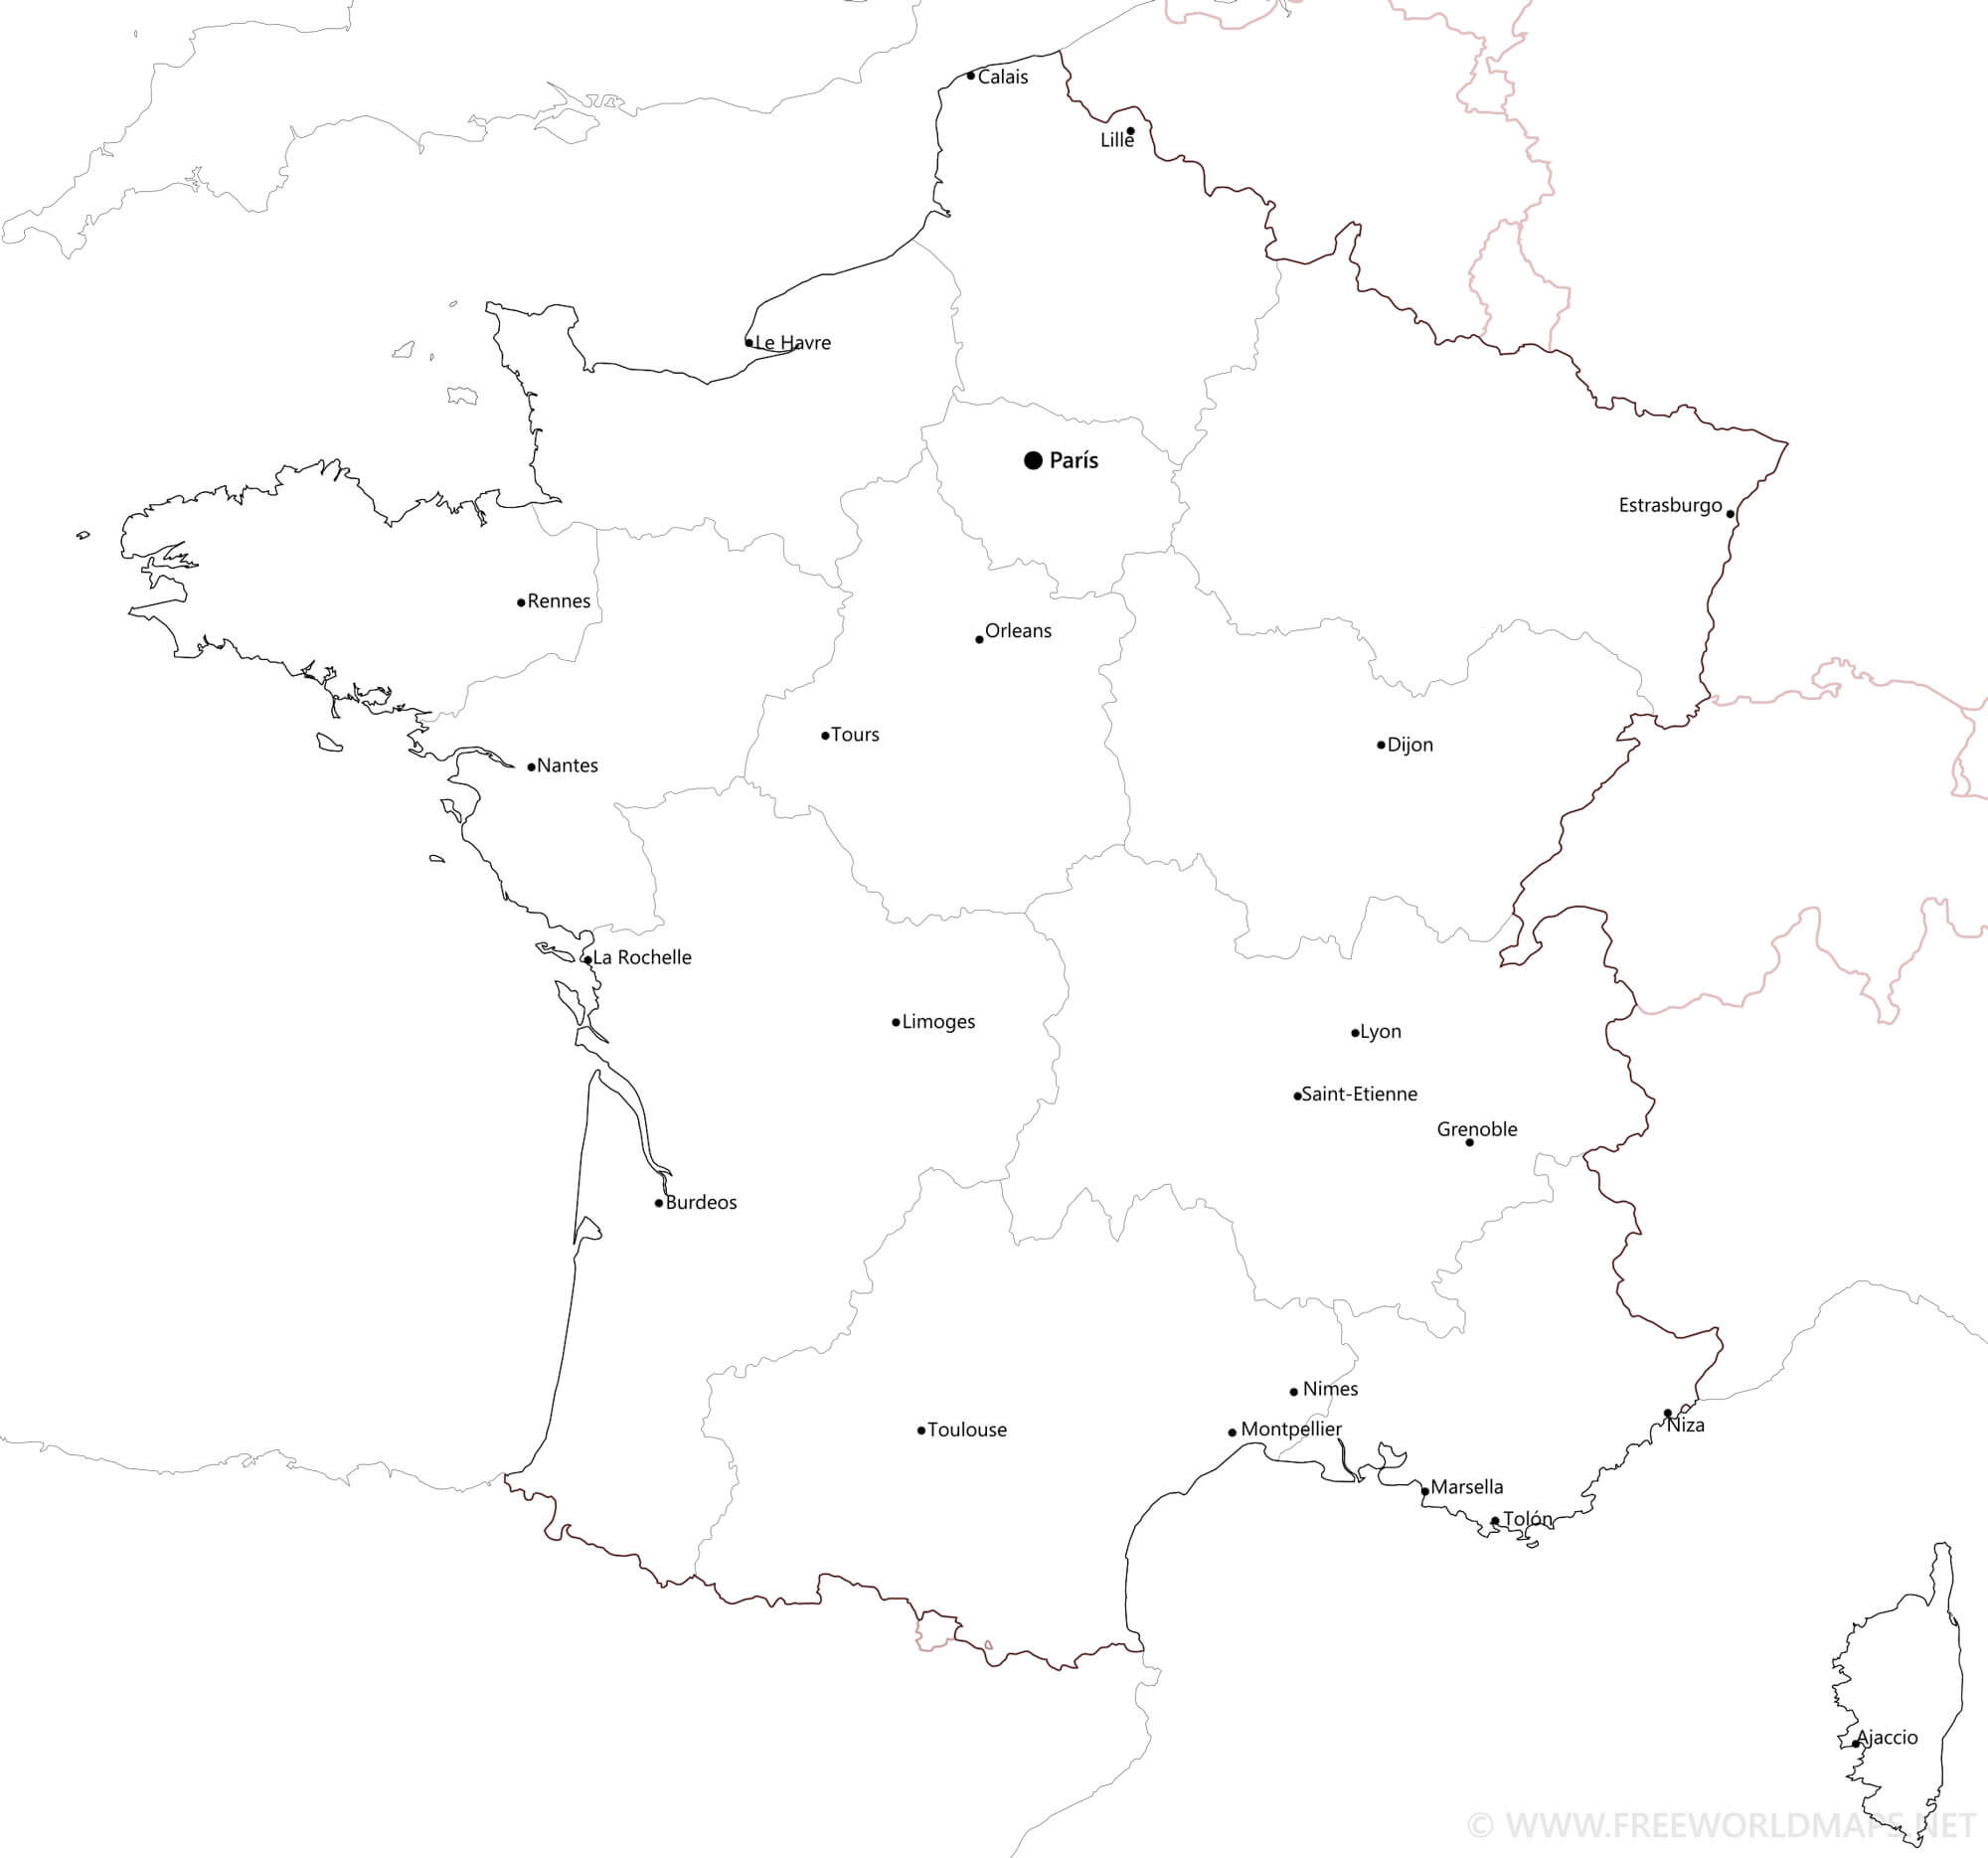 mapa fisico de francia para imprimir